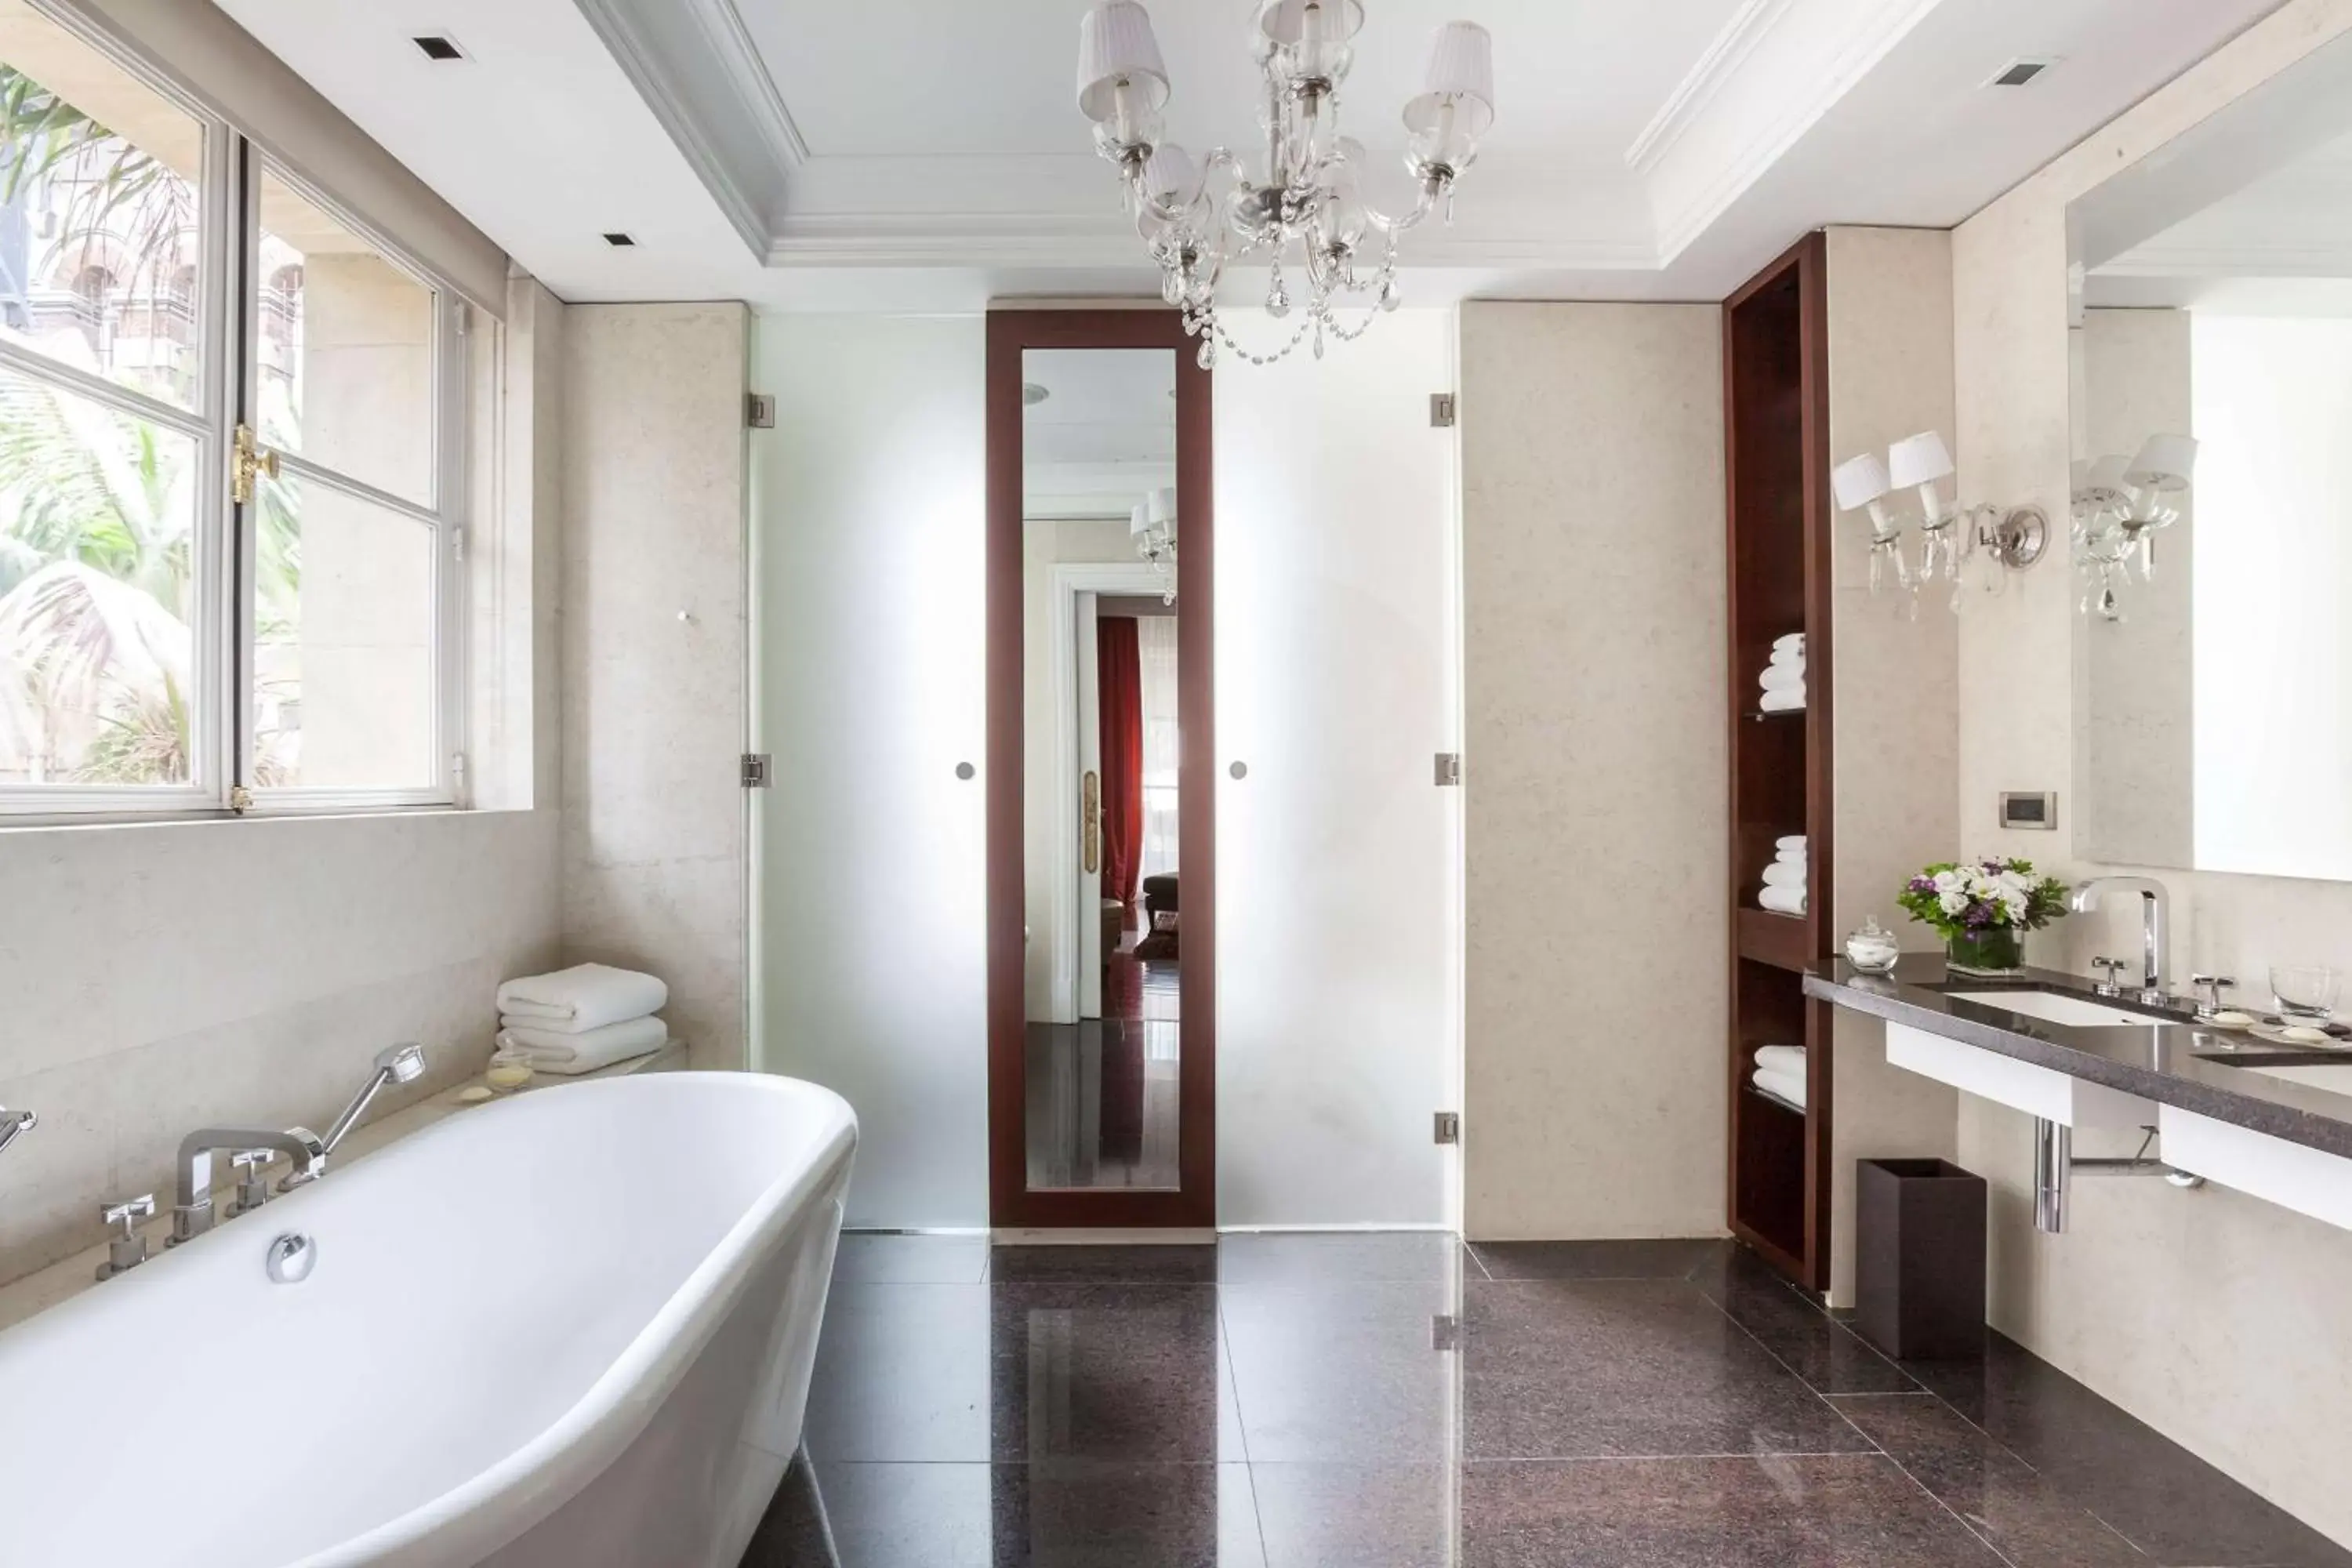 Photo of the whole room, Bathroom in Palacio Duhau - Park Hyatt Buenos Aires